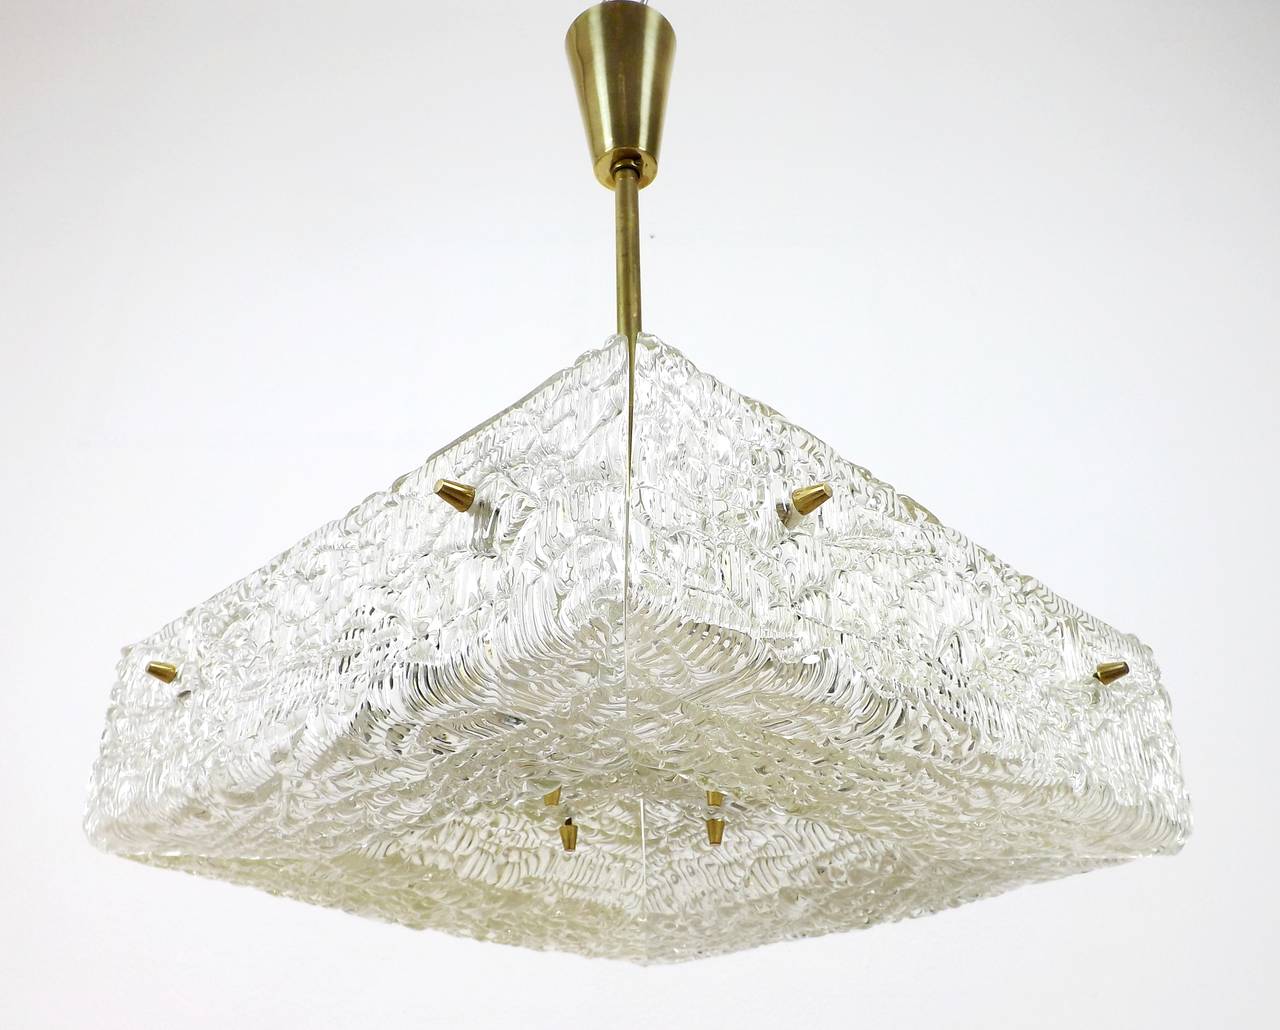 Eine Leuchte aus strukturiertem Glas und Messing von J.T. Kalmar, Österreich, hergestellt um die Jahrhundertmitte, etwa 1960 (Ende der 1950er oder Anfang der 1960er Jahre).
Ein quadratisches Pressglas mit wässriger Struktur ist in vier Teile